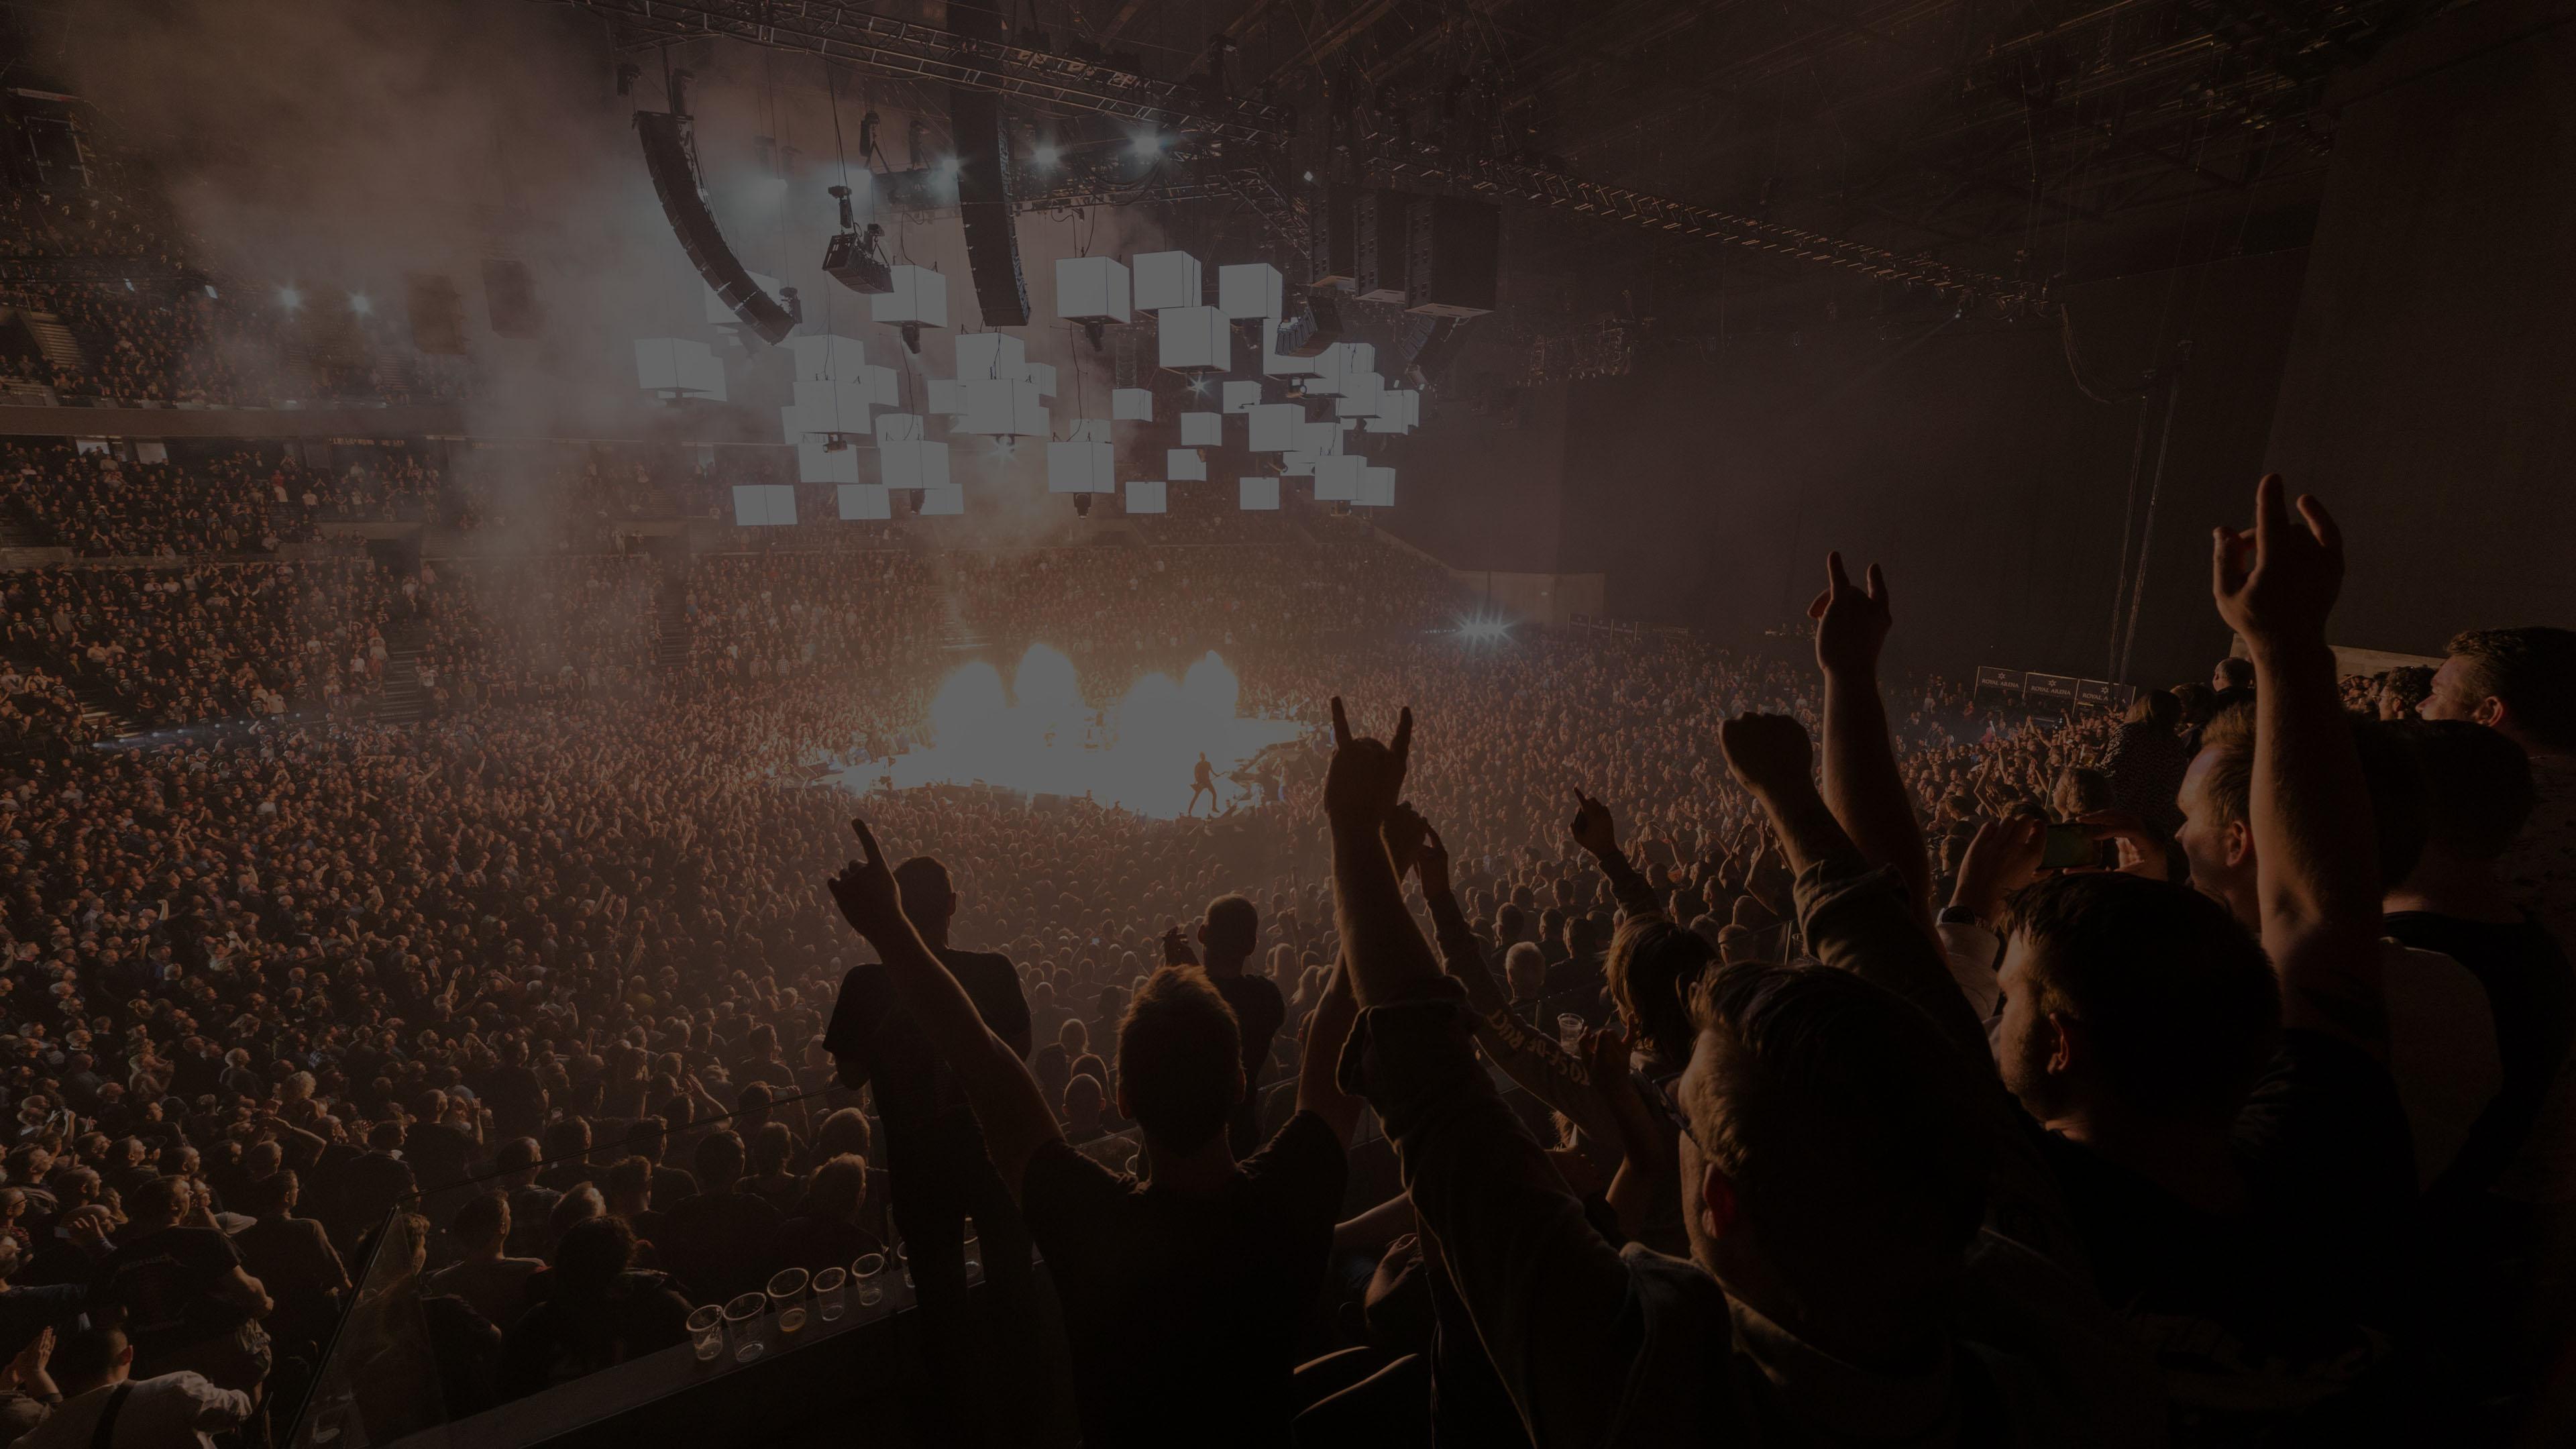 Metallica at Royal Arena in Copenhagen, Denmark on September 2, 2017